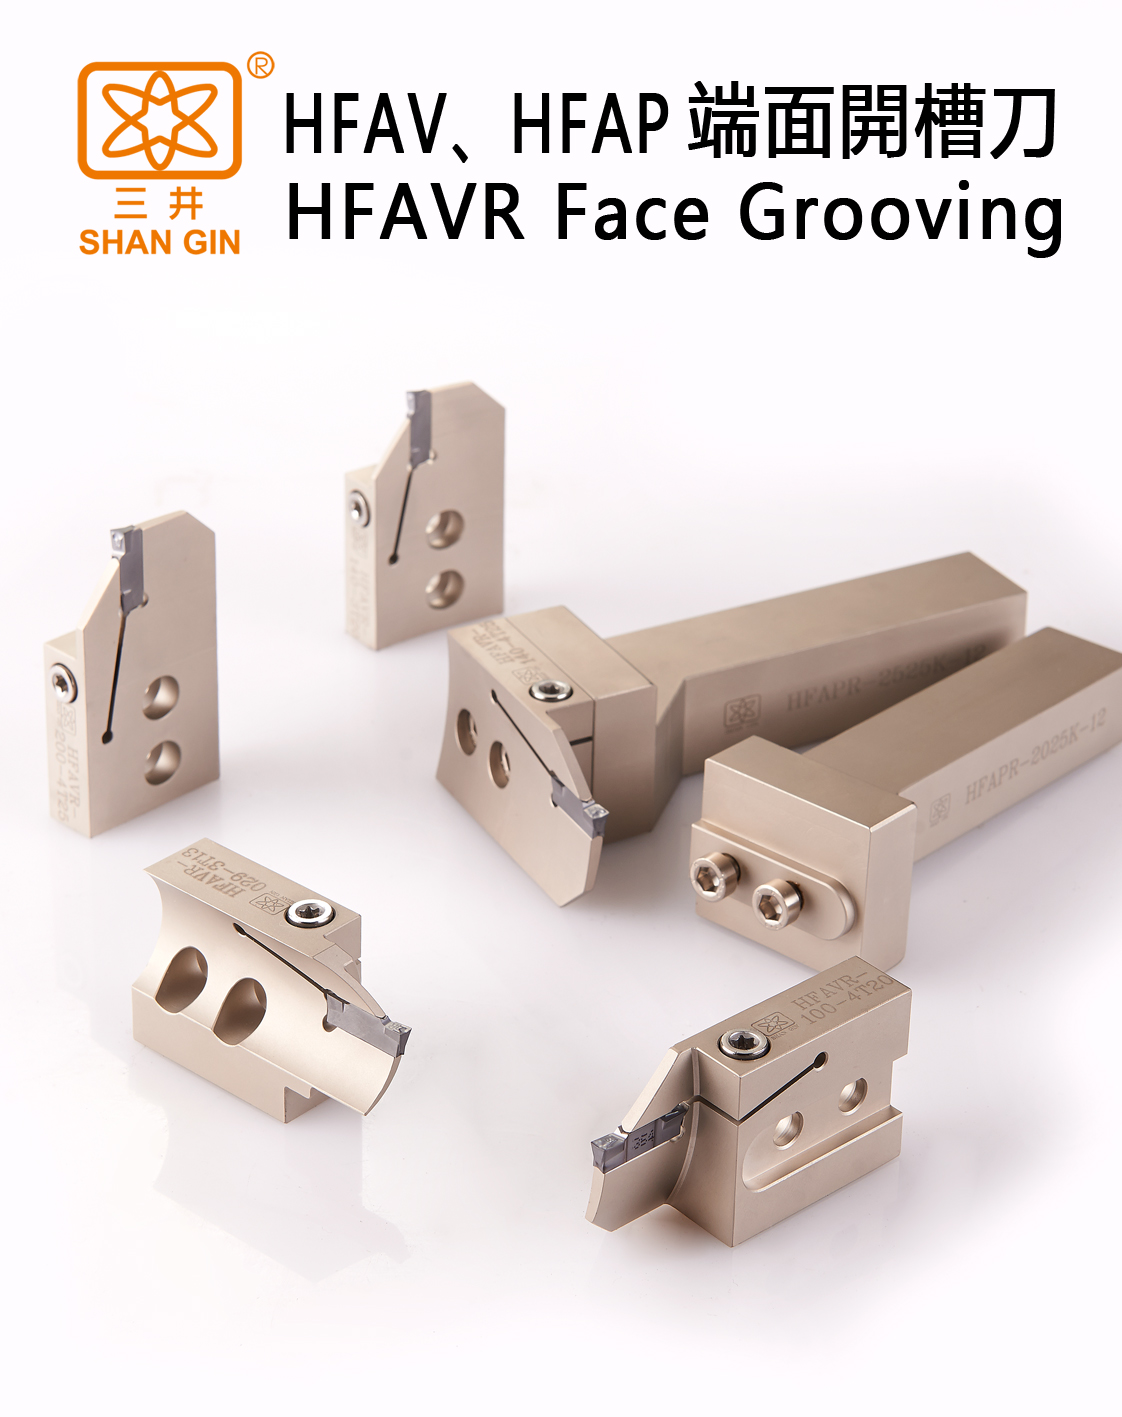 HFAV、HFAP端面開槽刀